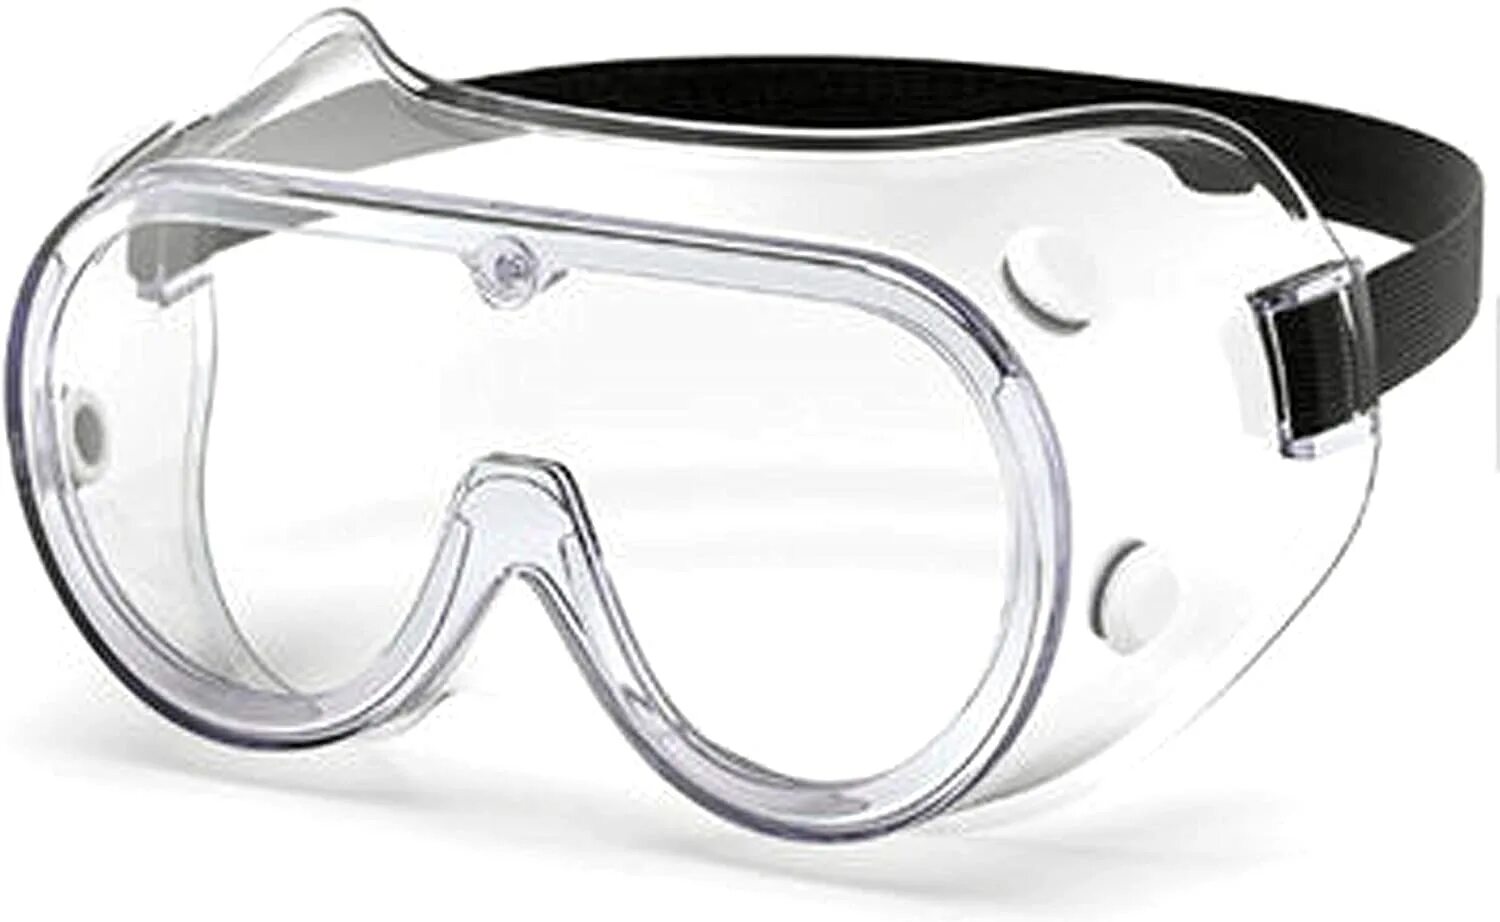 Очки защитные противошумные. 4500rpm Wear Eye Protection.